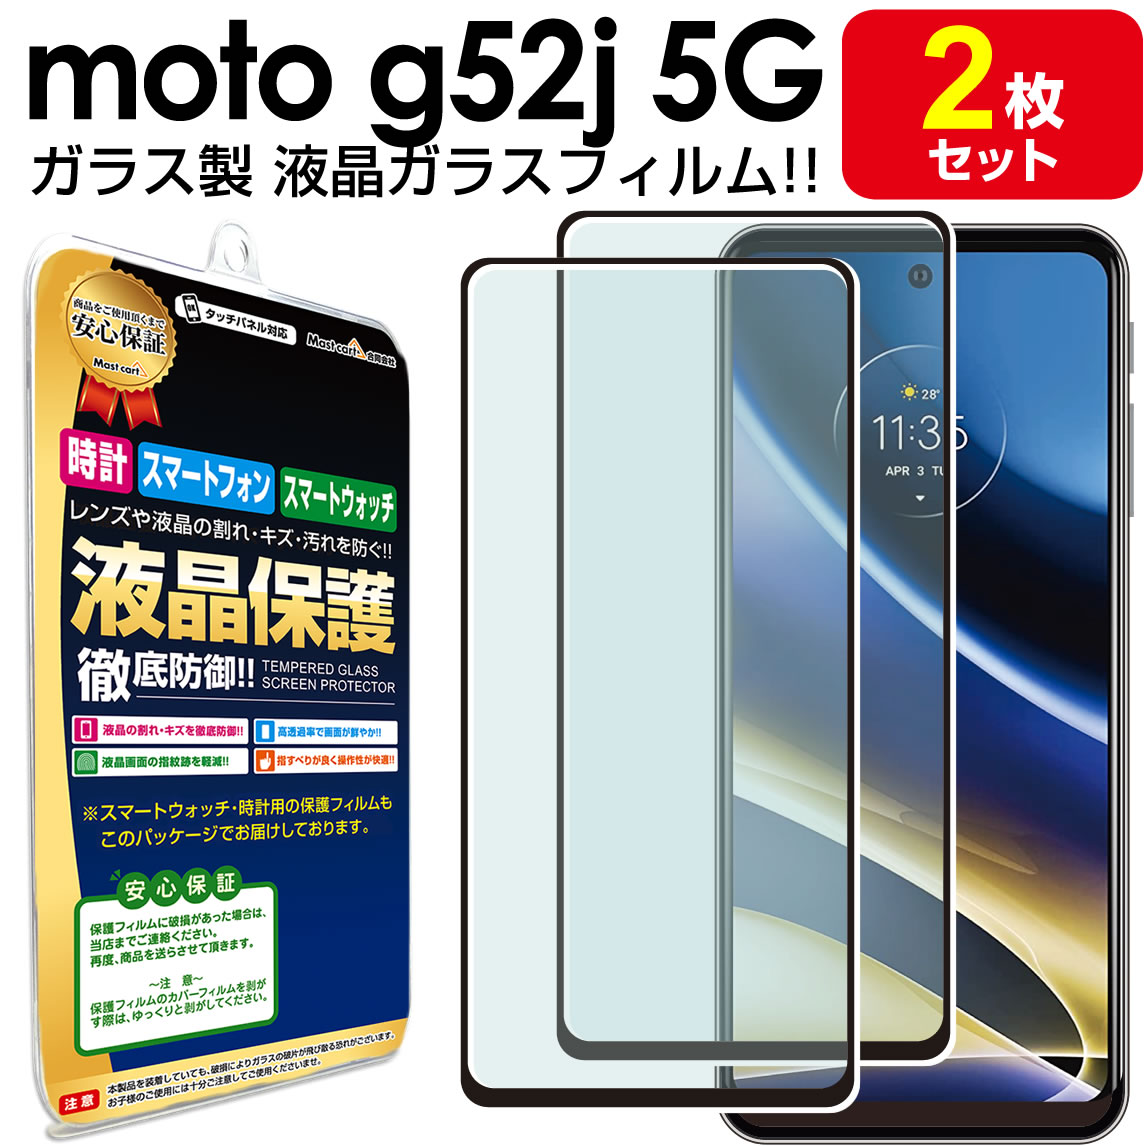 お得な情報満載 Motorola moto g52j 5G 画面割れジャンク交換部品 